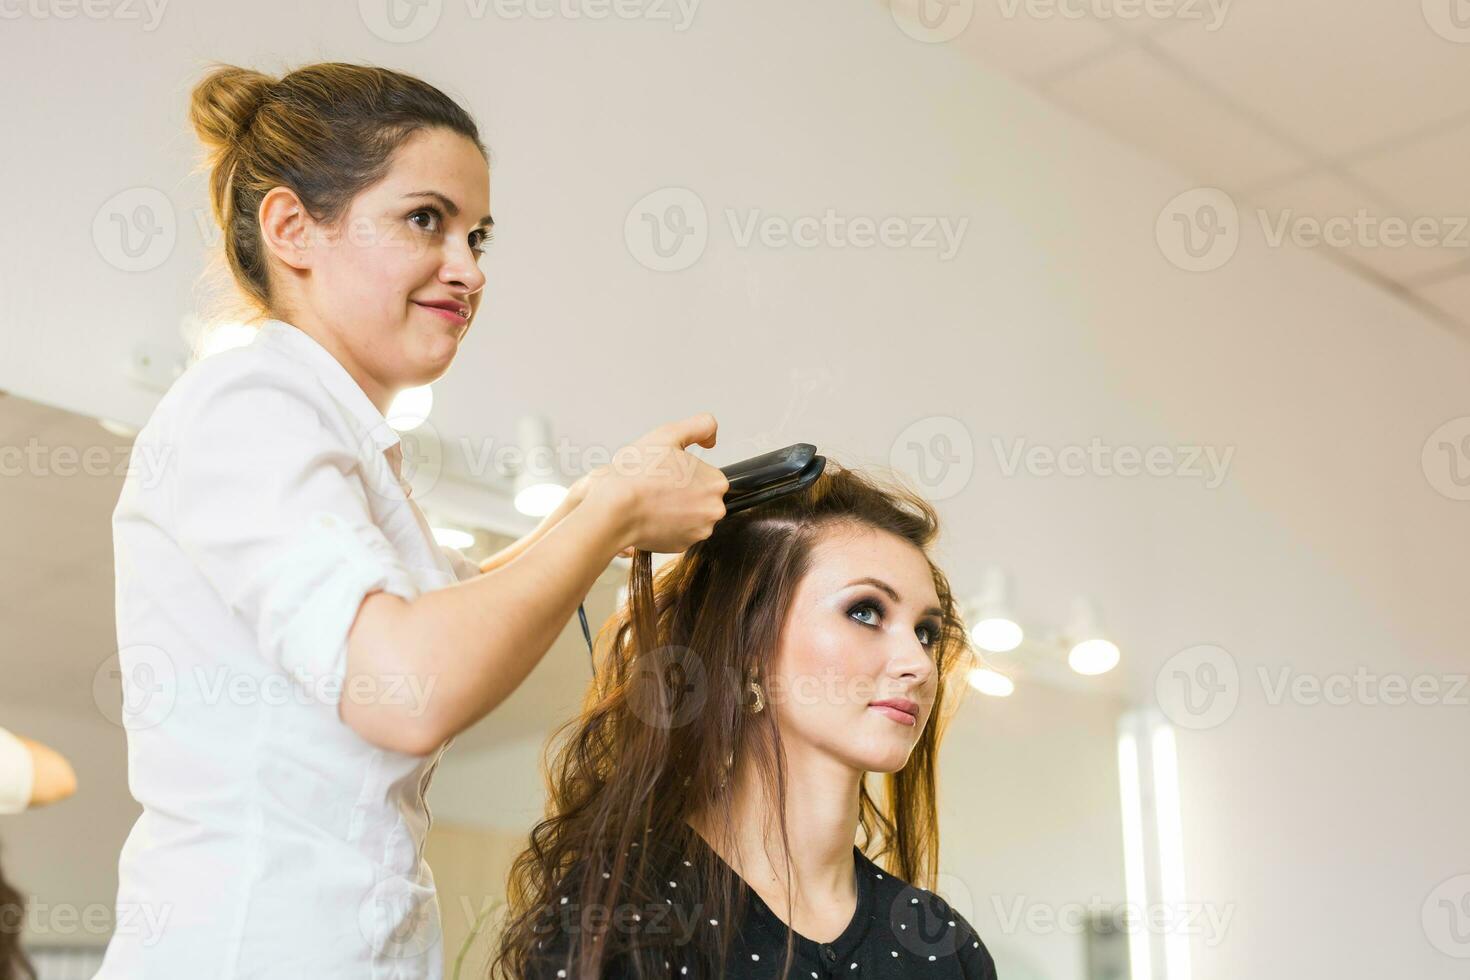 coiffeur Faire la Coupe de cheveux pour femmes dans coiffure salon. concept de mode et beauté. positif émotion. photo